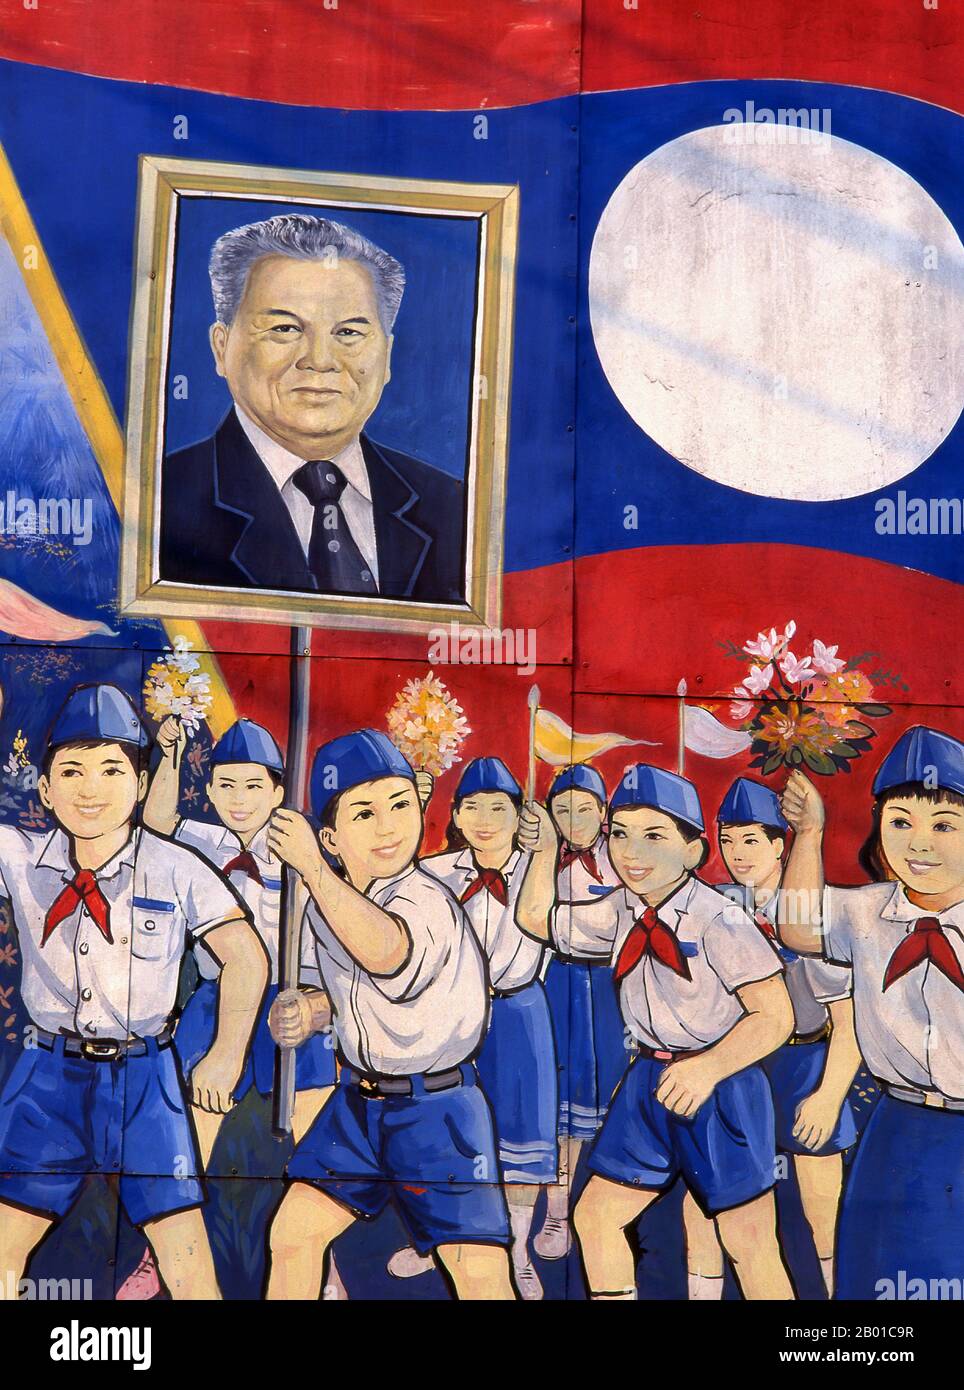 Laos: Die Kinder tragen ein Bild von Kaysone Phomvihane, Präsident von Laos von 1991 bis zu seinem Tod im Jahr 1992, einem politischen Plakat im revolutionären sozialistischen Realismus auf den Straßen von Vientiane. Kaysone Phomvihane (13. Dezember 1920 - 21. November 1992) war ab 1955 Führer der Laos-Partei der Revolution des Volkes. Von 1975 bis 1991 war er erster Premierminister der Demokratischen Volksrepublik Laos und von 1991 bis zu seinem Tod im Jahr 1992 Präsident. Stockfoto